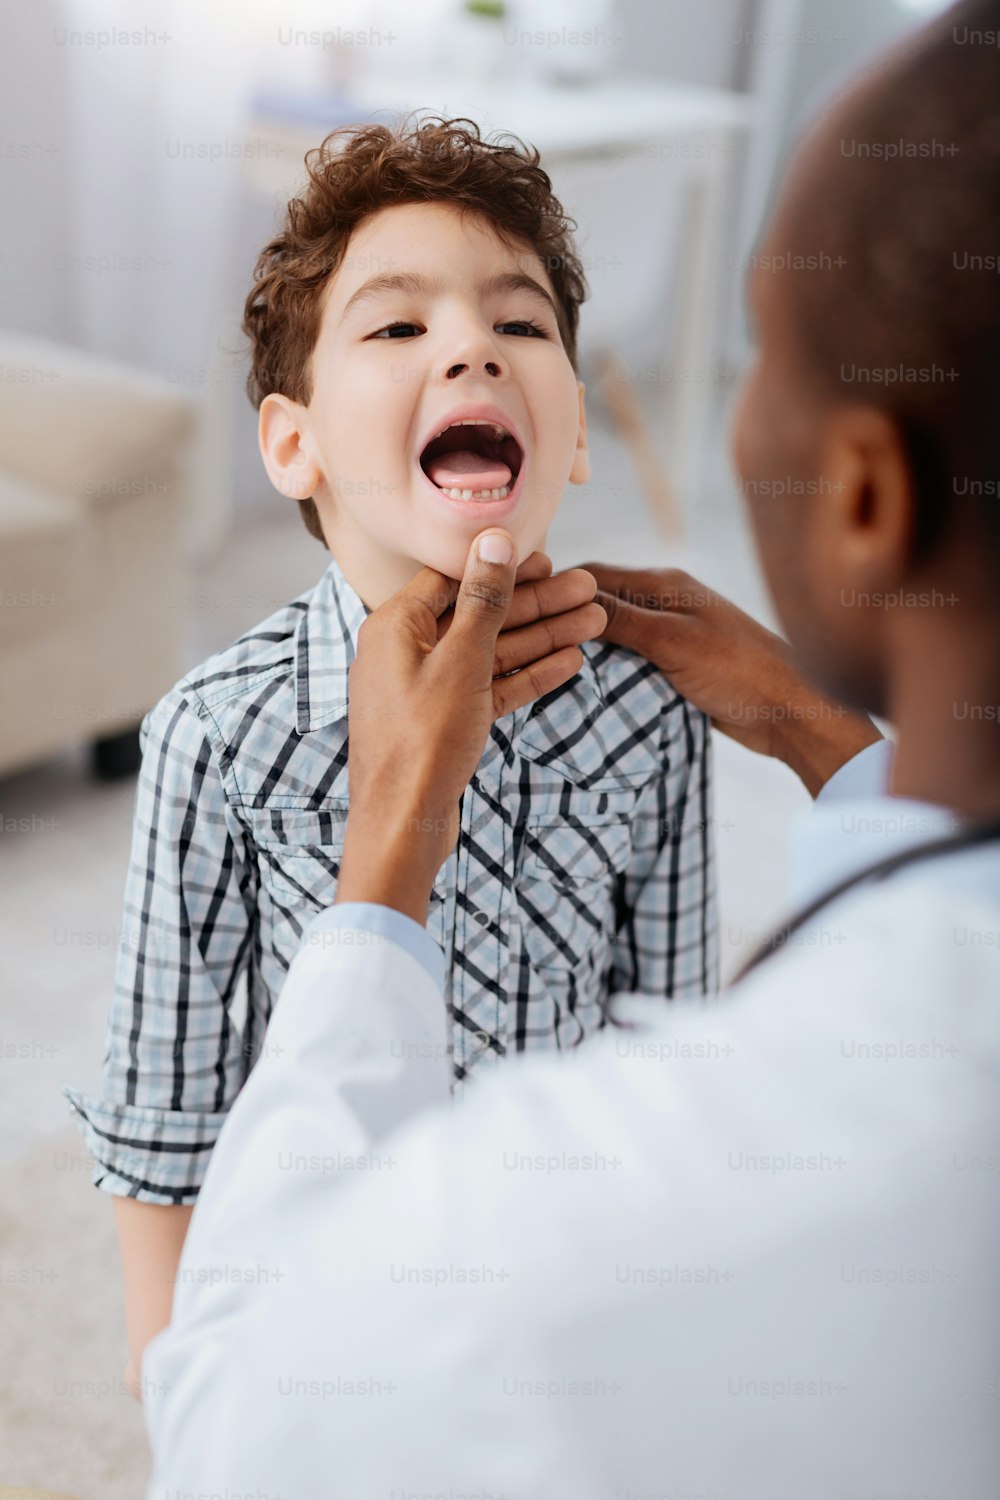 Arztdiagnose. Junge, der den Mund öffnet, und erfahrener professioneller männlicher Arzt, der sein Kinn berührt